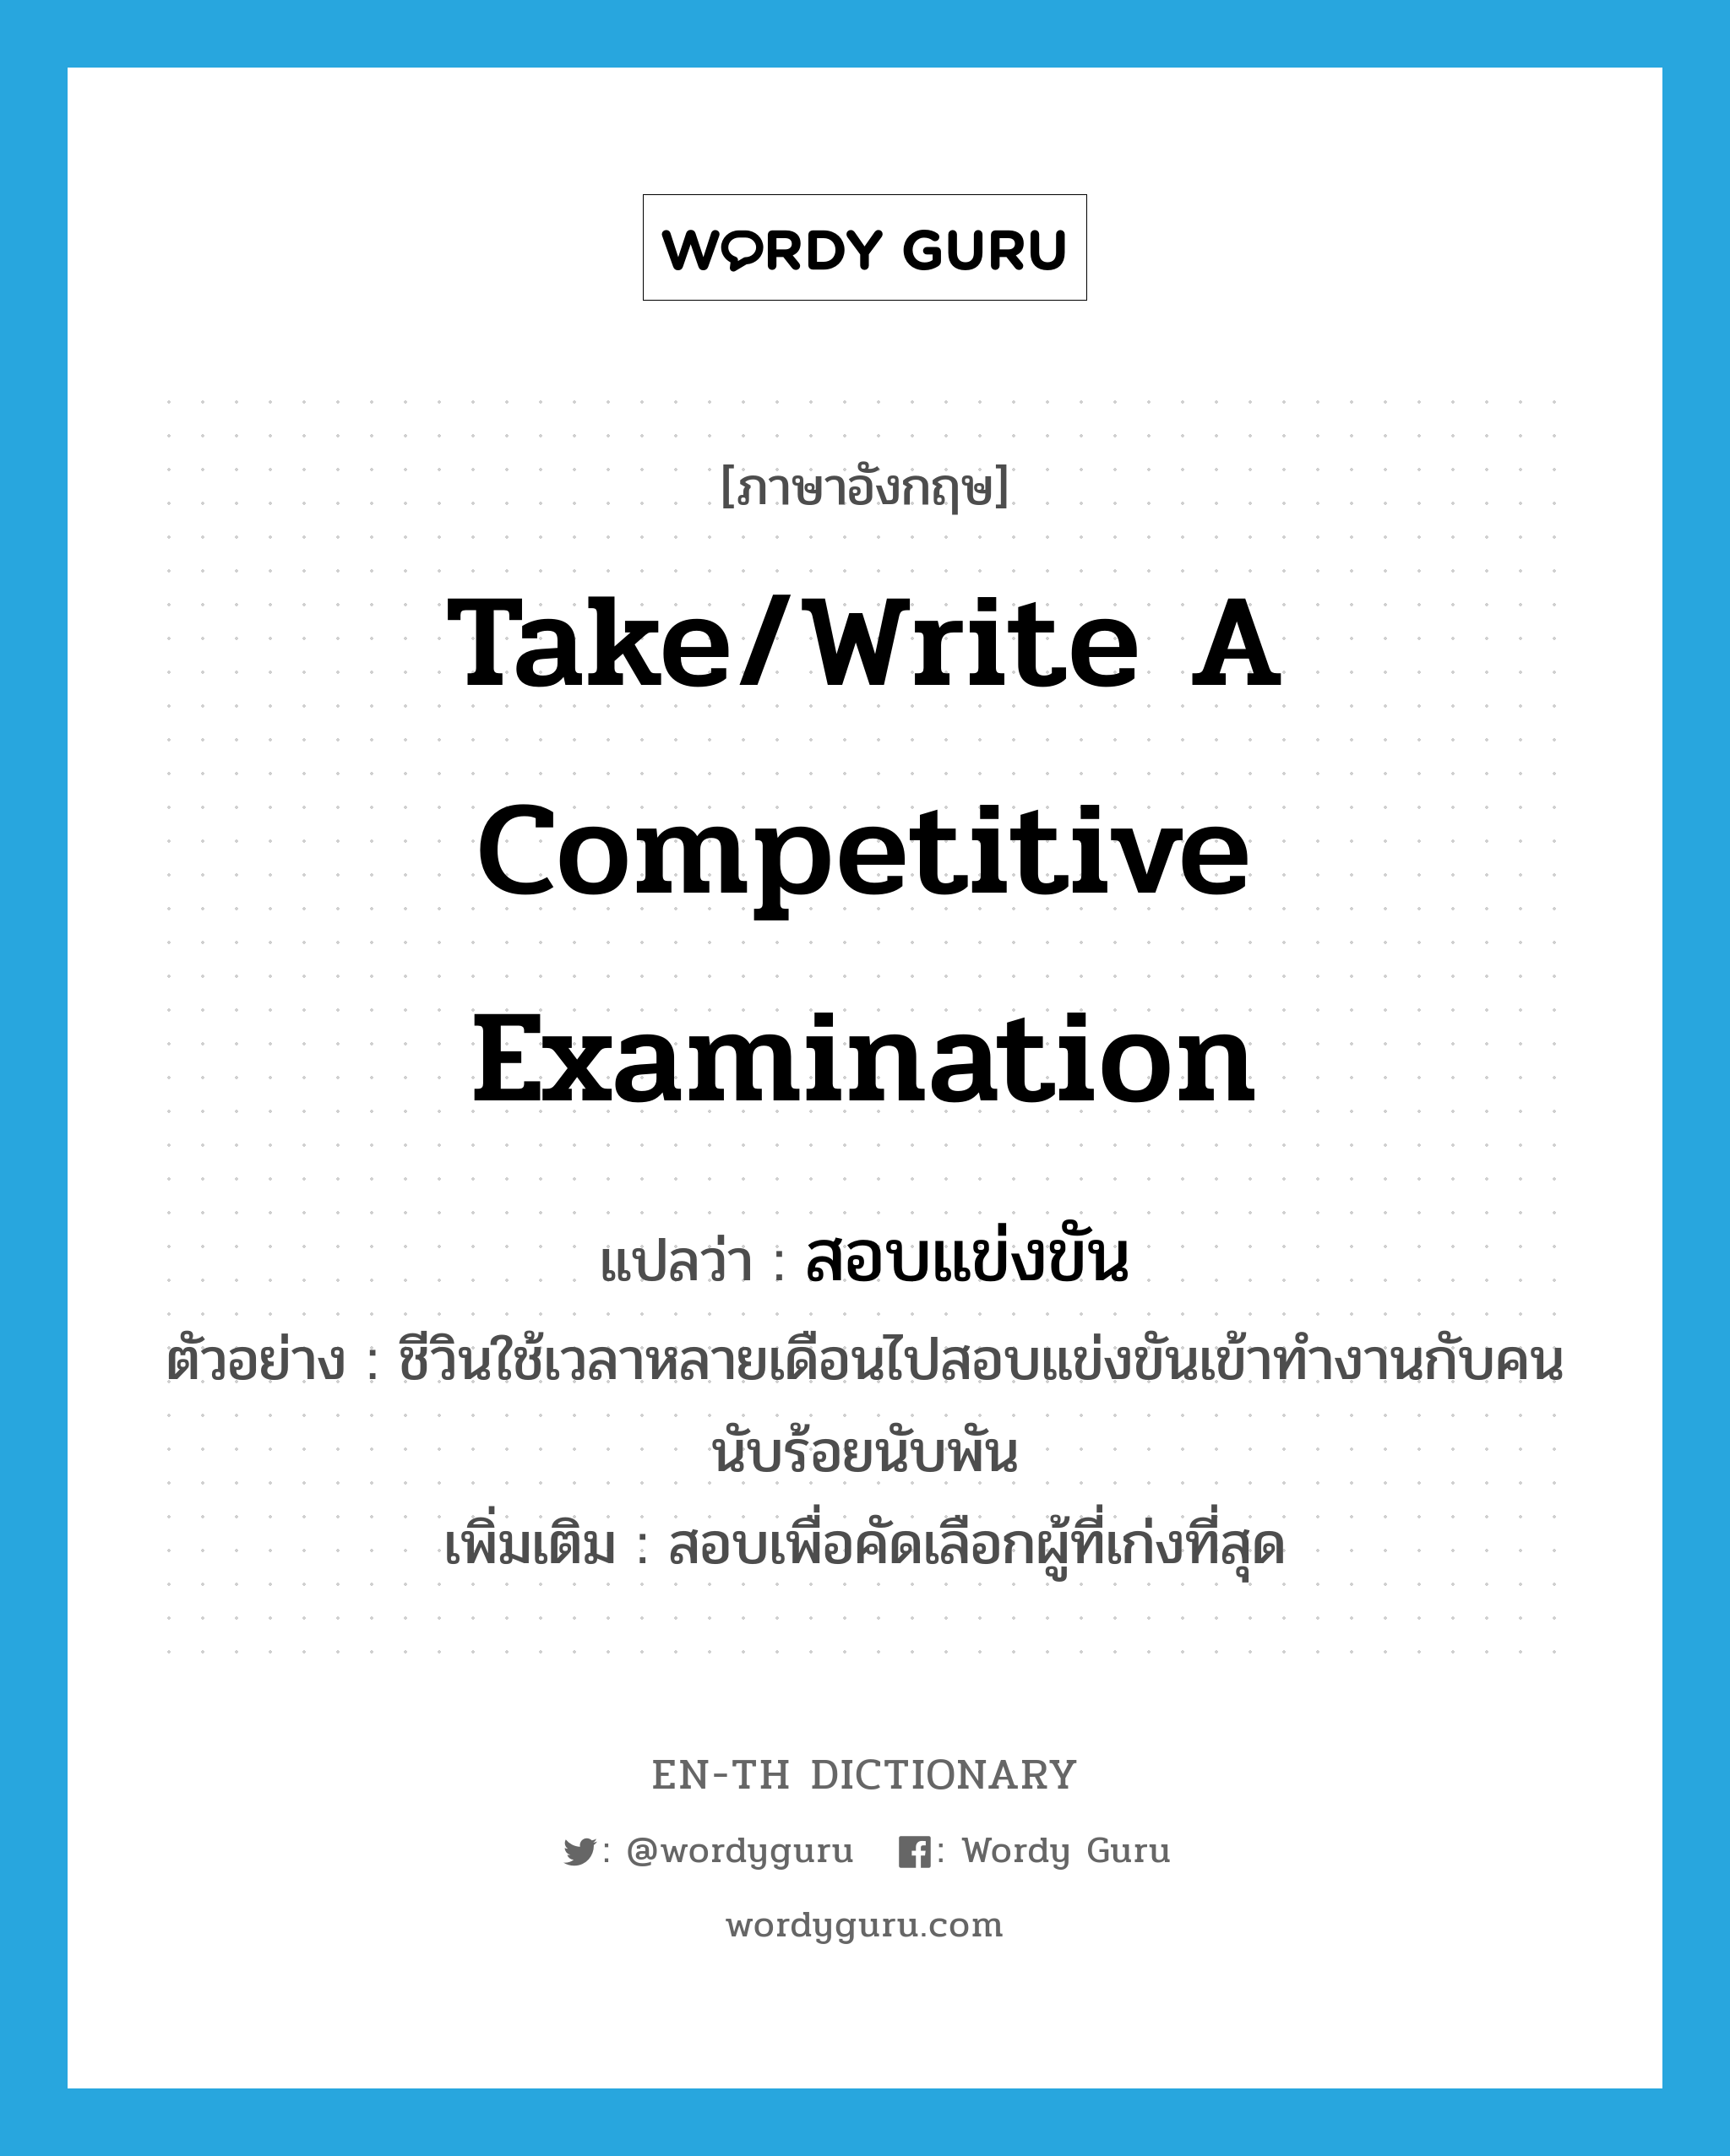 take/write a competitive examination แปลว่า?, คำศัพท์ภาษาอังกฤษ take/write a competitive examination แปลว่า สอบแข่งขัน ประเภท V ตัวอย่าง ชีวินใช้เวลาหลายเดือนไปสอบแข่งขันเข้าทำงานกับคนนับร้อยนับพัน เพิ่มเติม สอบเพื่อคัดเลือกผู้ที่เก่งที่สุด หมวด V